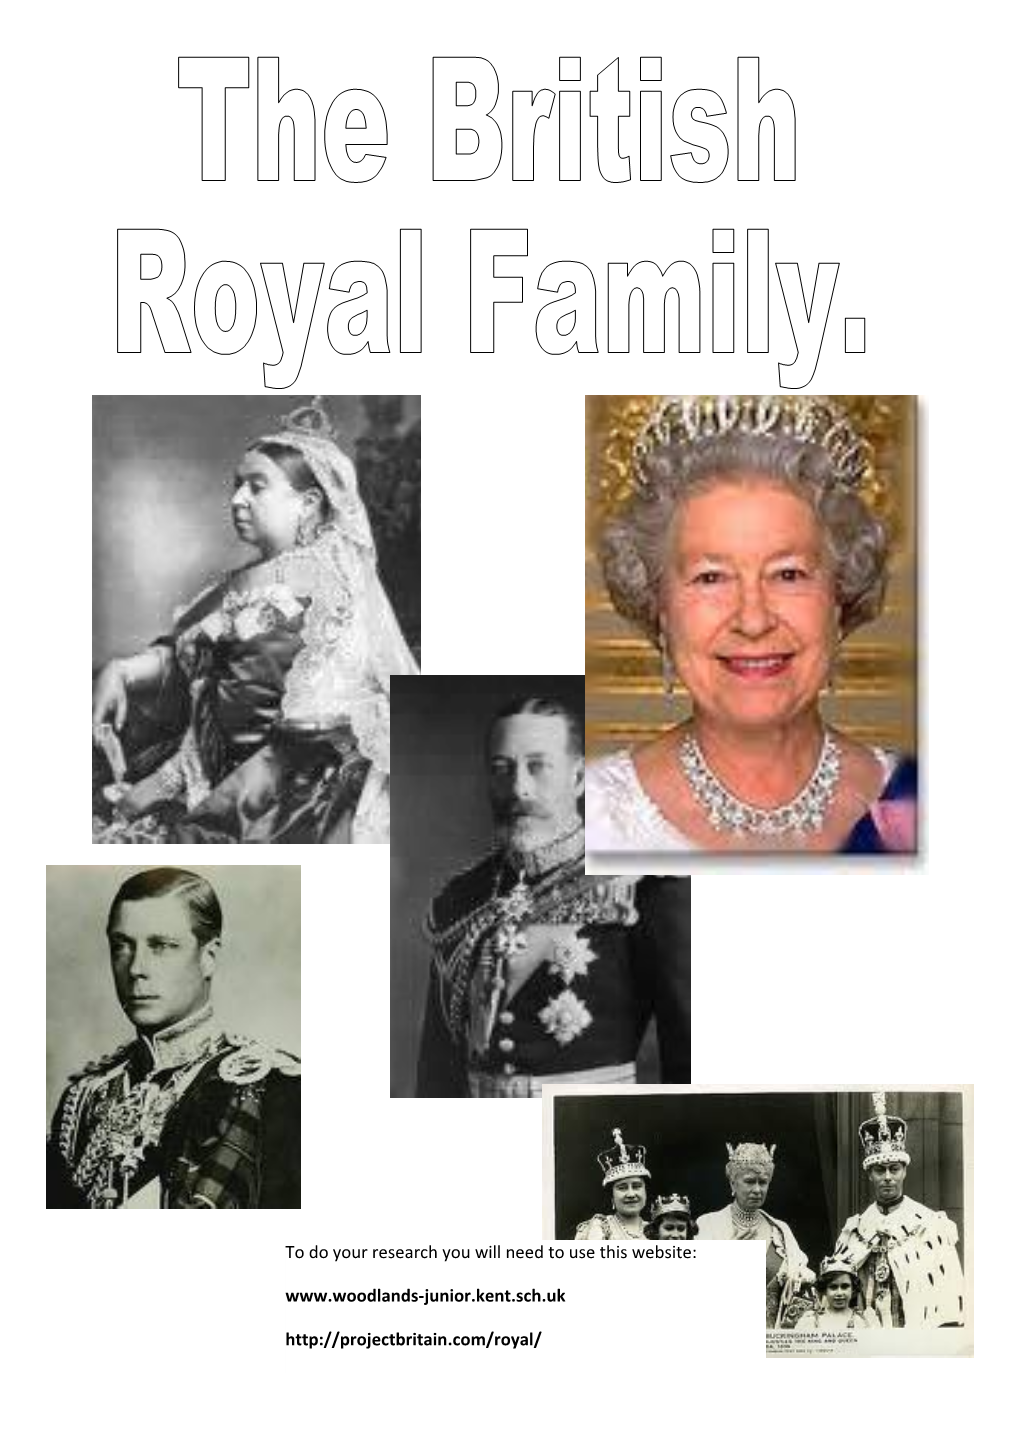 The Royal Family Today: Family Tree